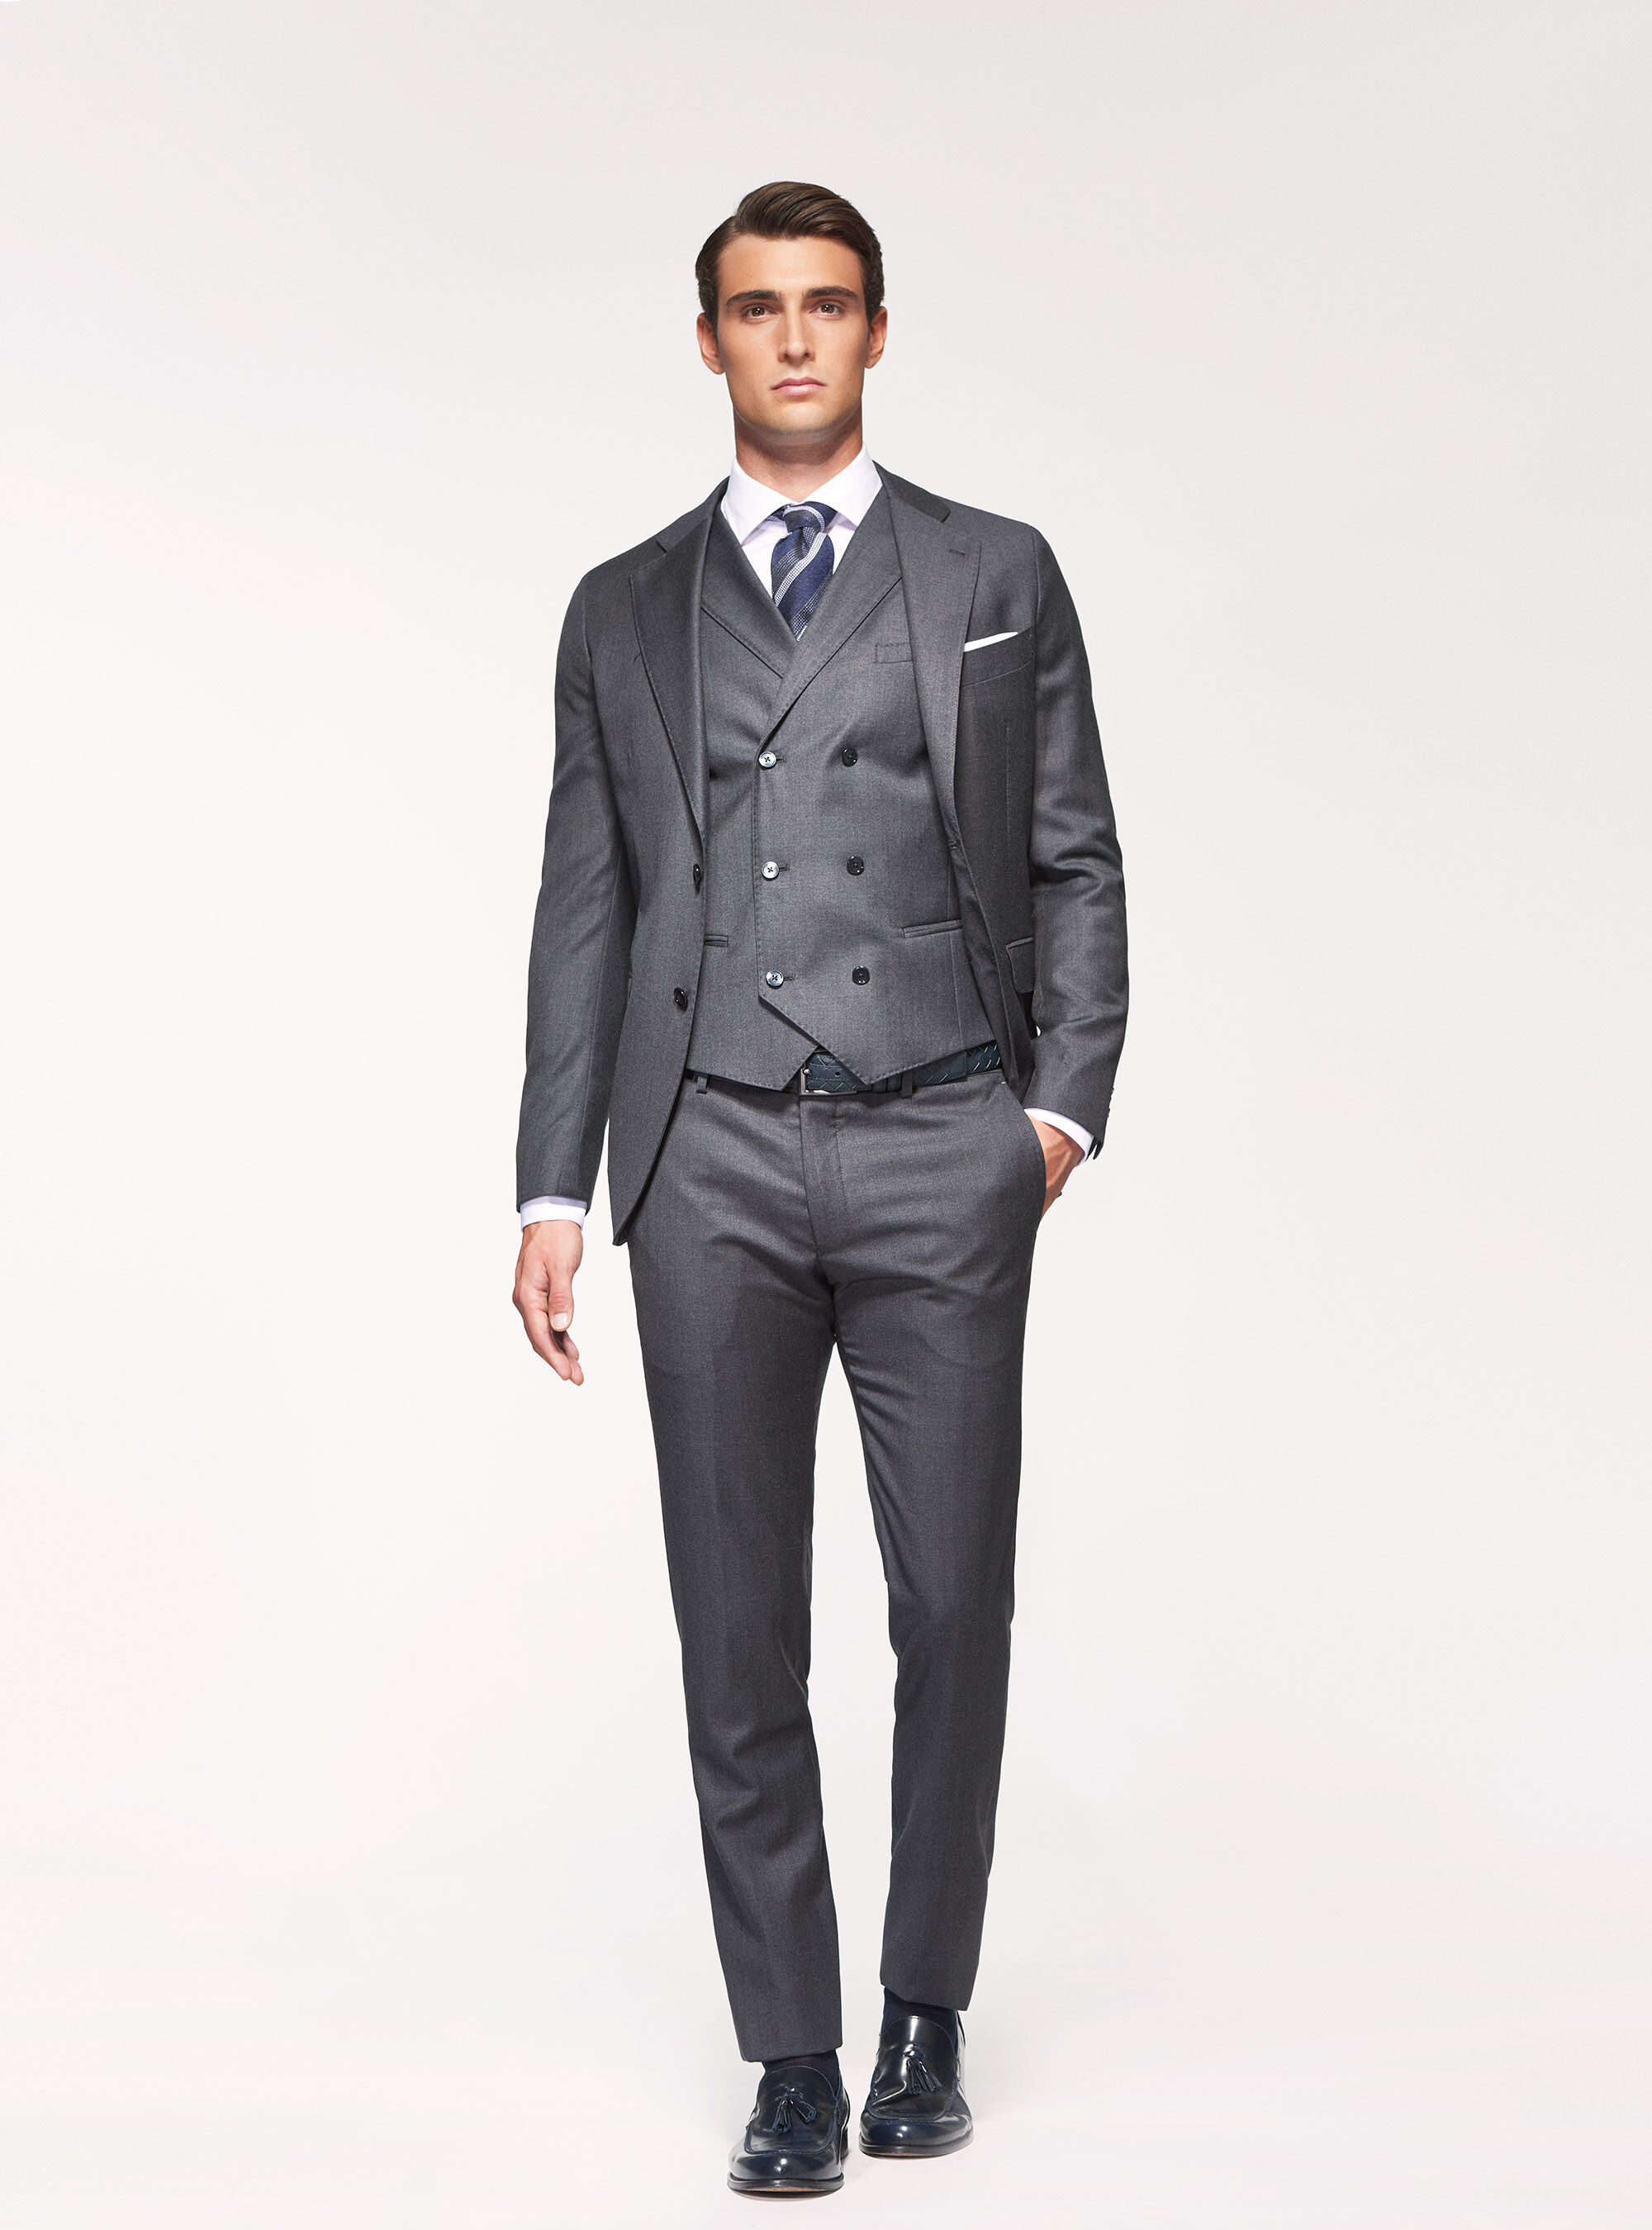 discount 96% MEN FASHION Suits & Sets Elegant Roberto torretta Suit trousers Navy Blue 44                  EU 